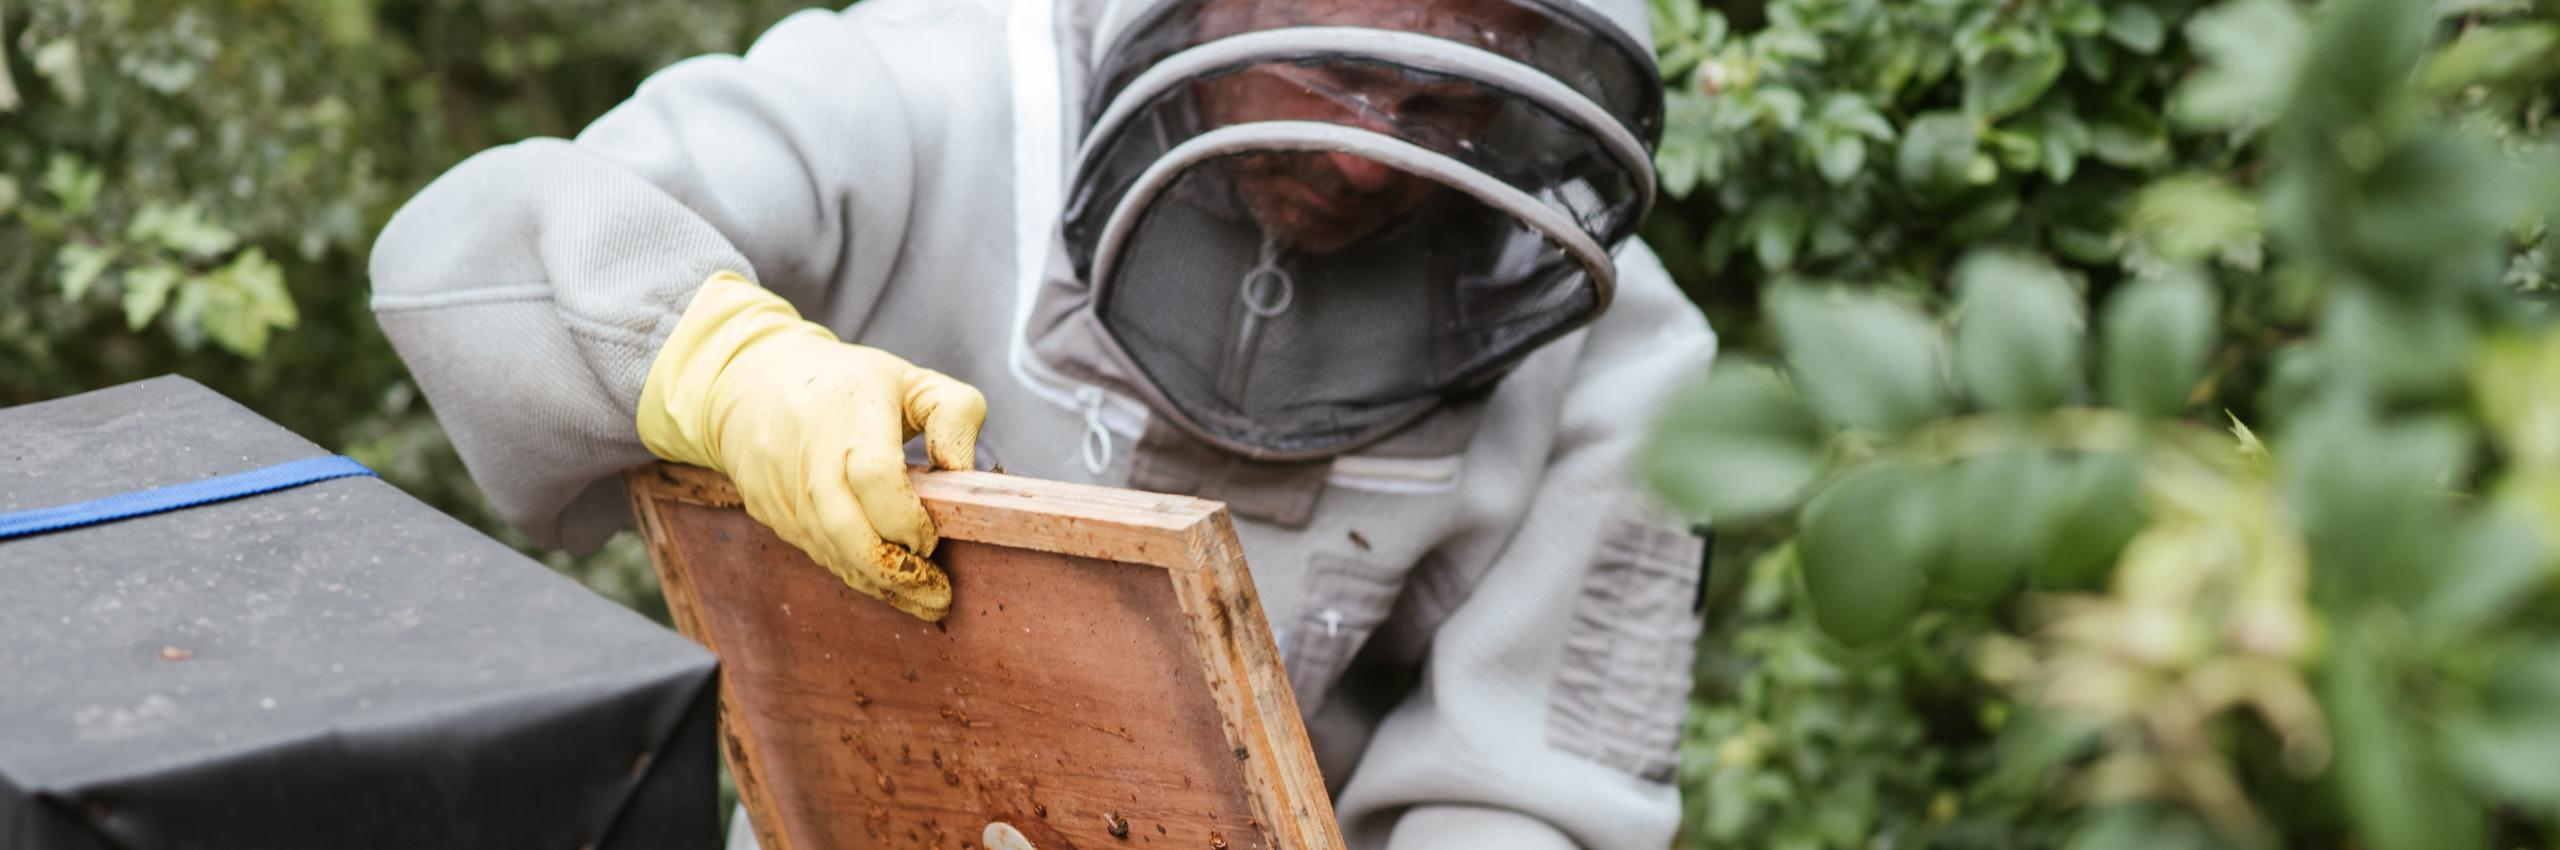 Foto di Anete Lusina: https://www.pexels.com/it-it/foto/uomo-del-raccolto-che-raccoglie-miele-nella-zona-della-campagna-5247947/